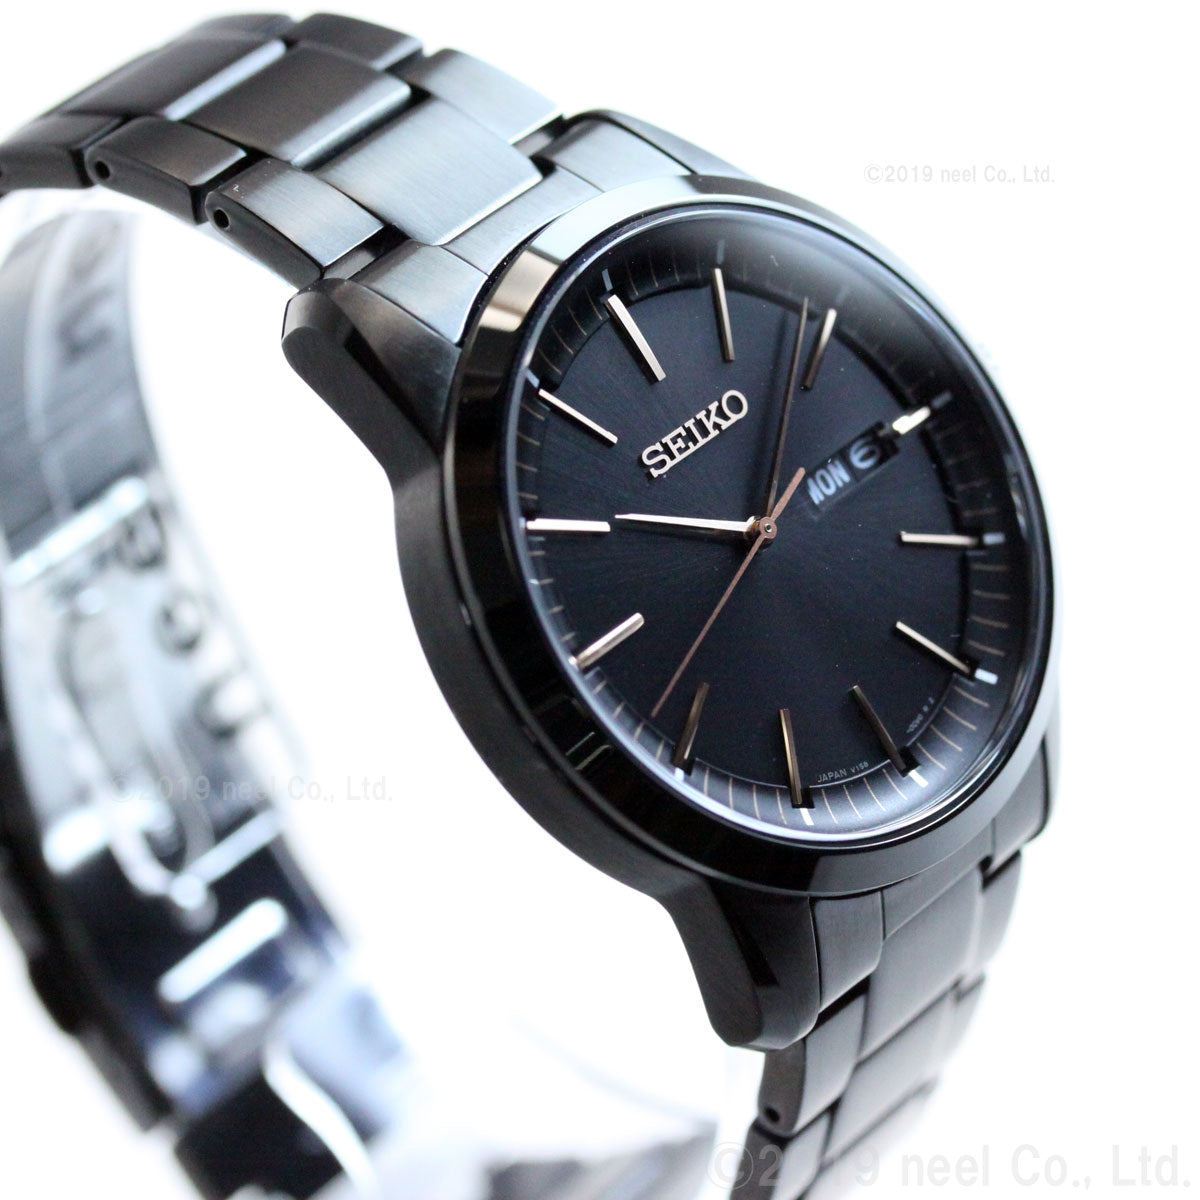 セイコー セレクション SEIKO SELECTION ソーラー ネット流通限定モデル 腕時計 メンズ SBPX135